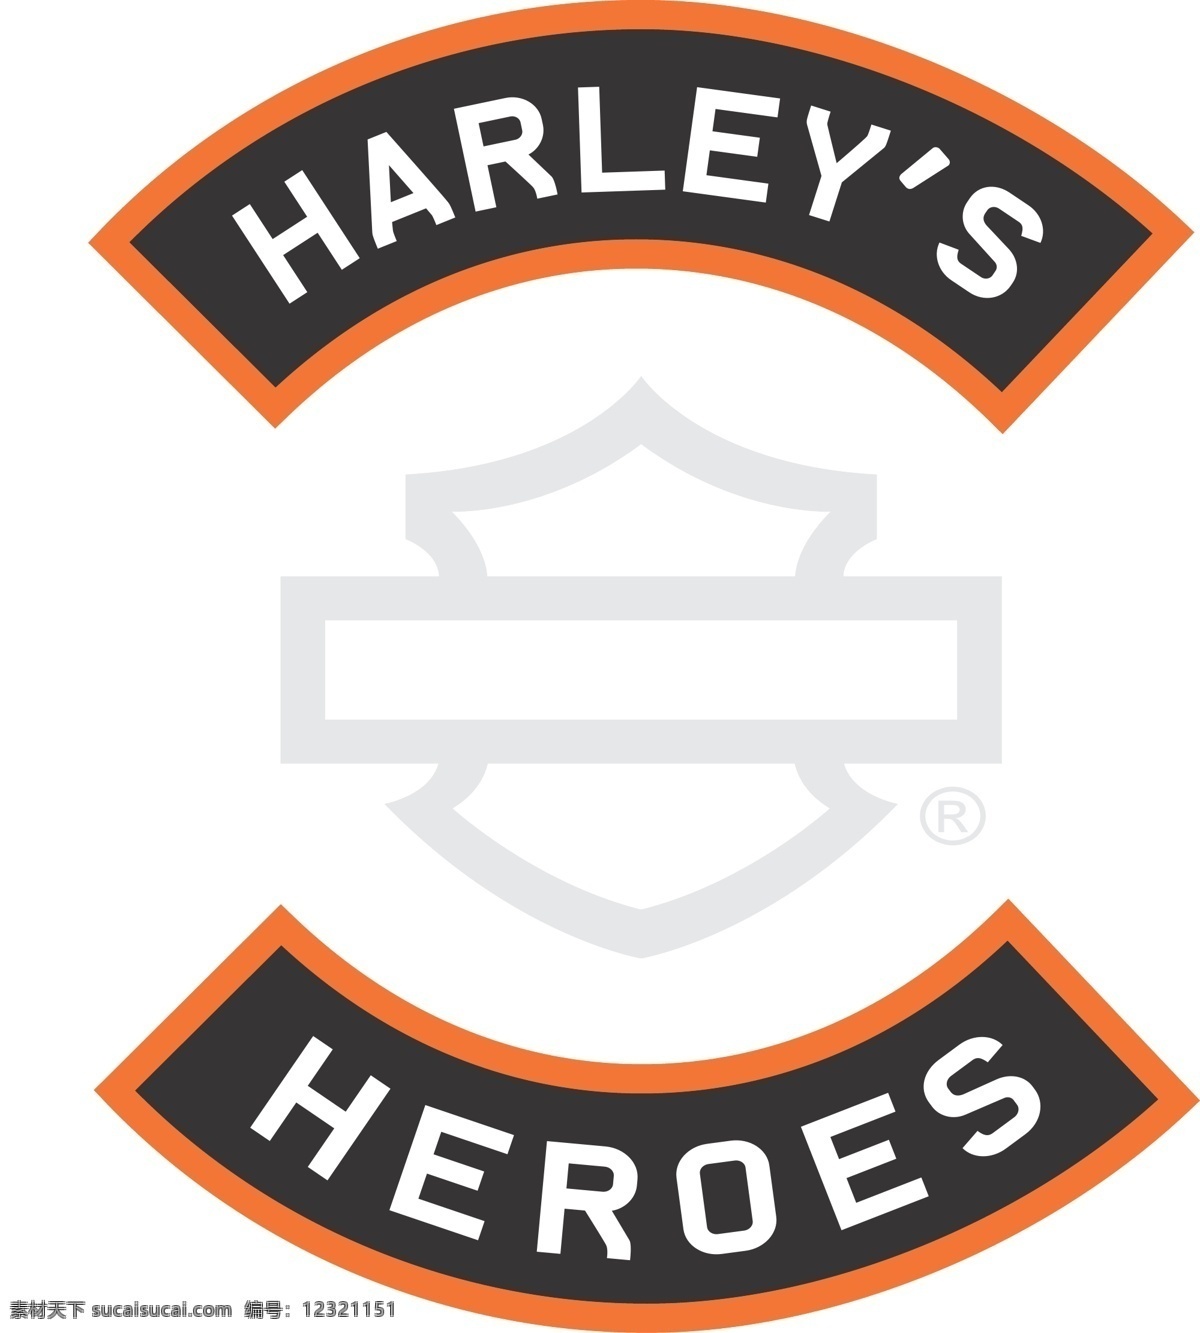 哈雷 英雄 logo 哈雷英雄 harleydavidson heroes 矢量图 其他矢量图